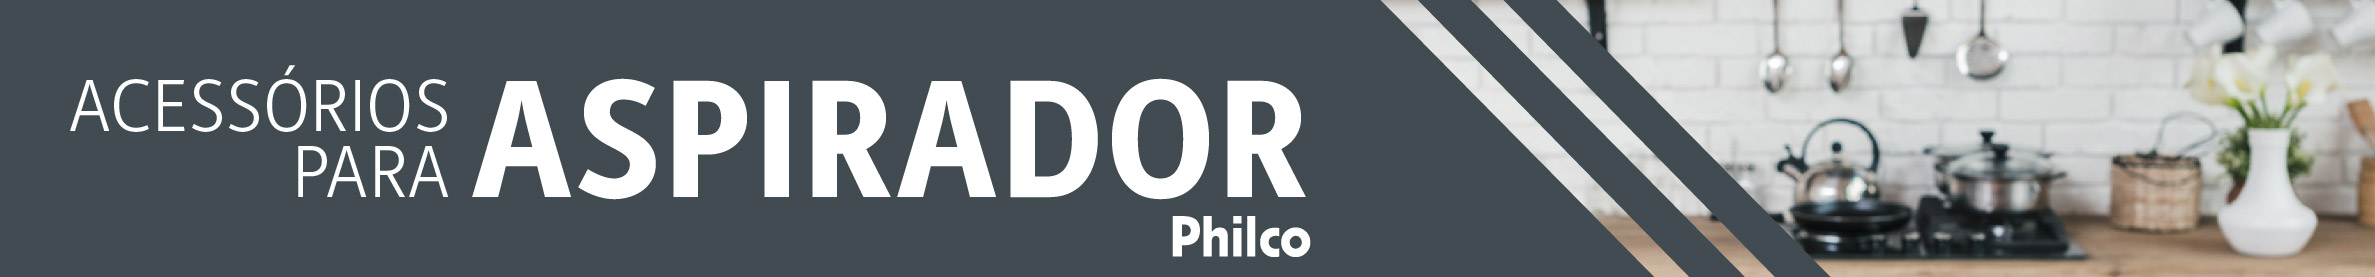 Aspirador-philco